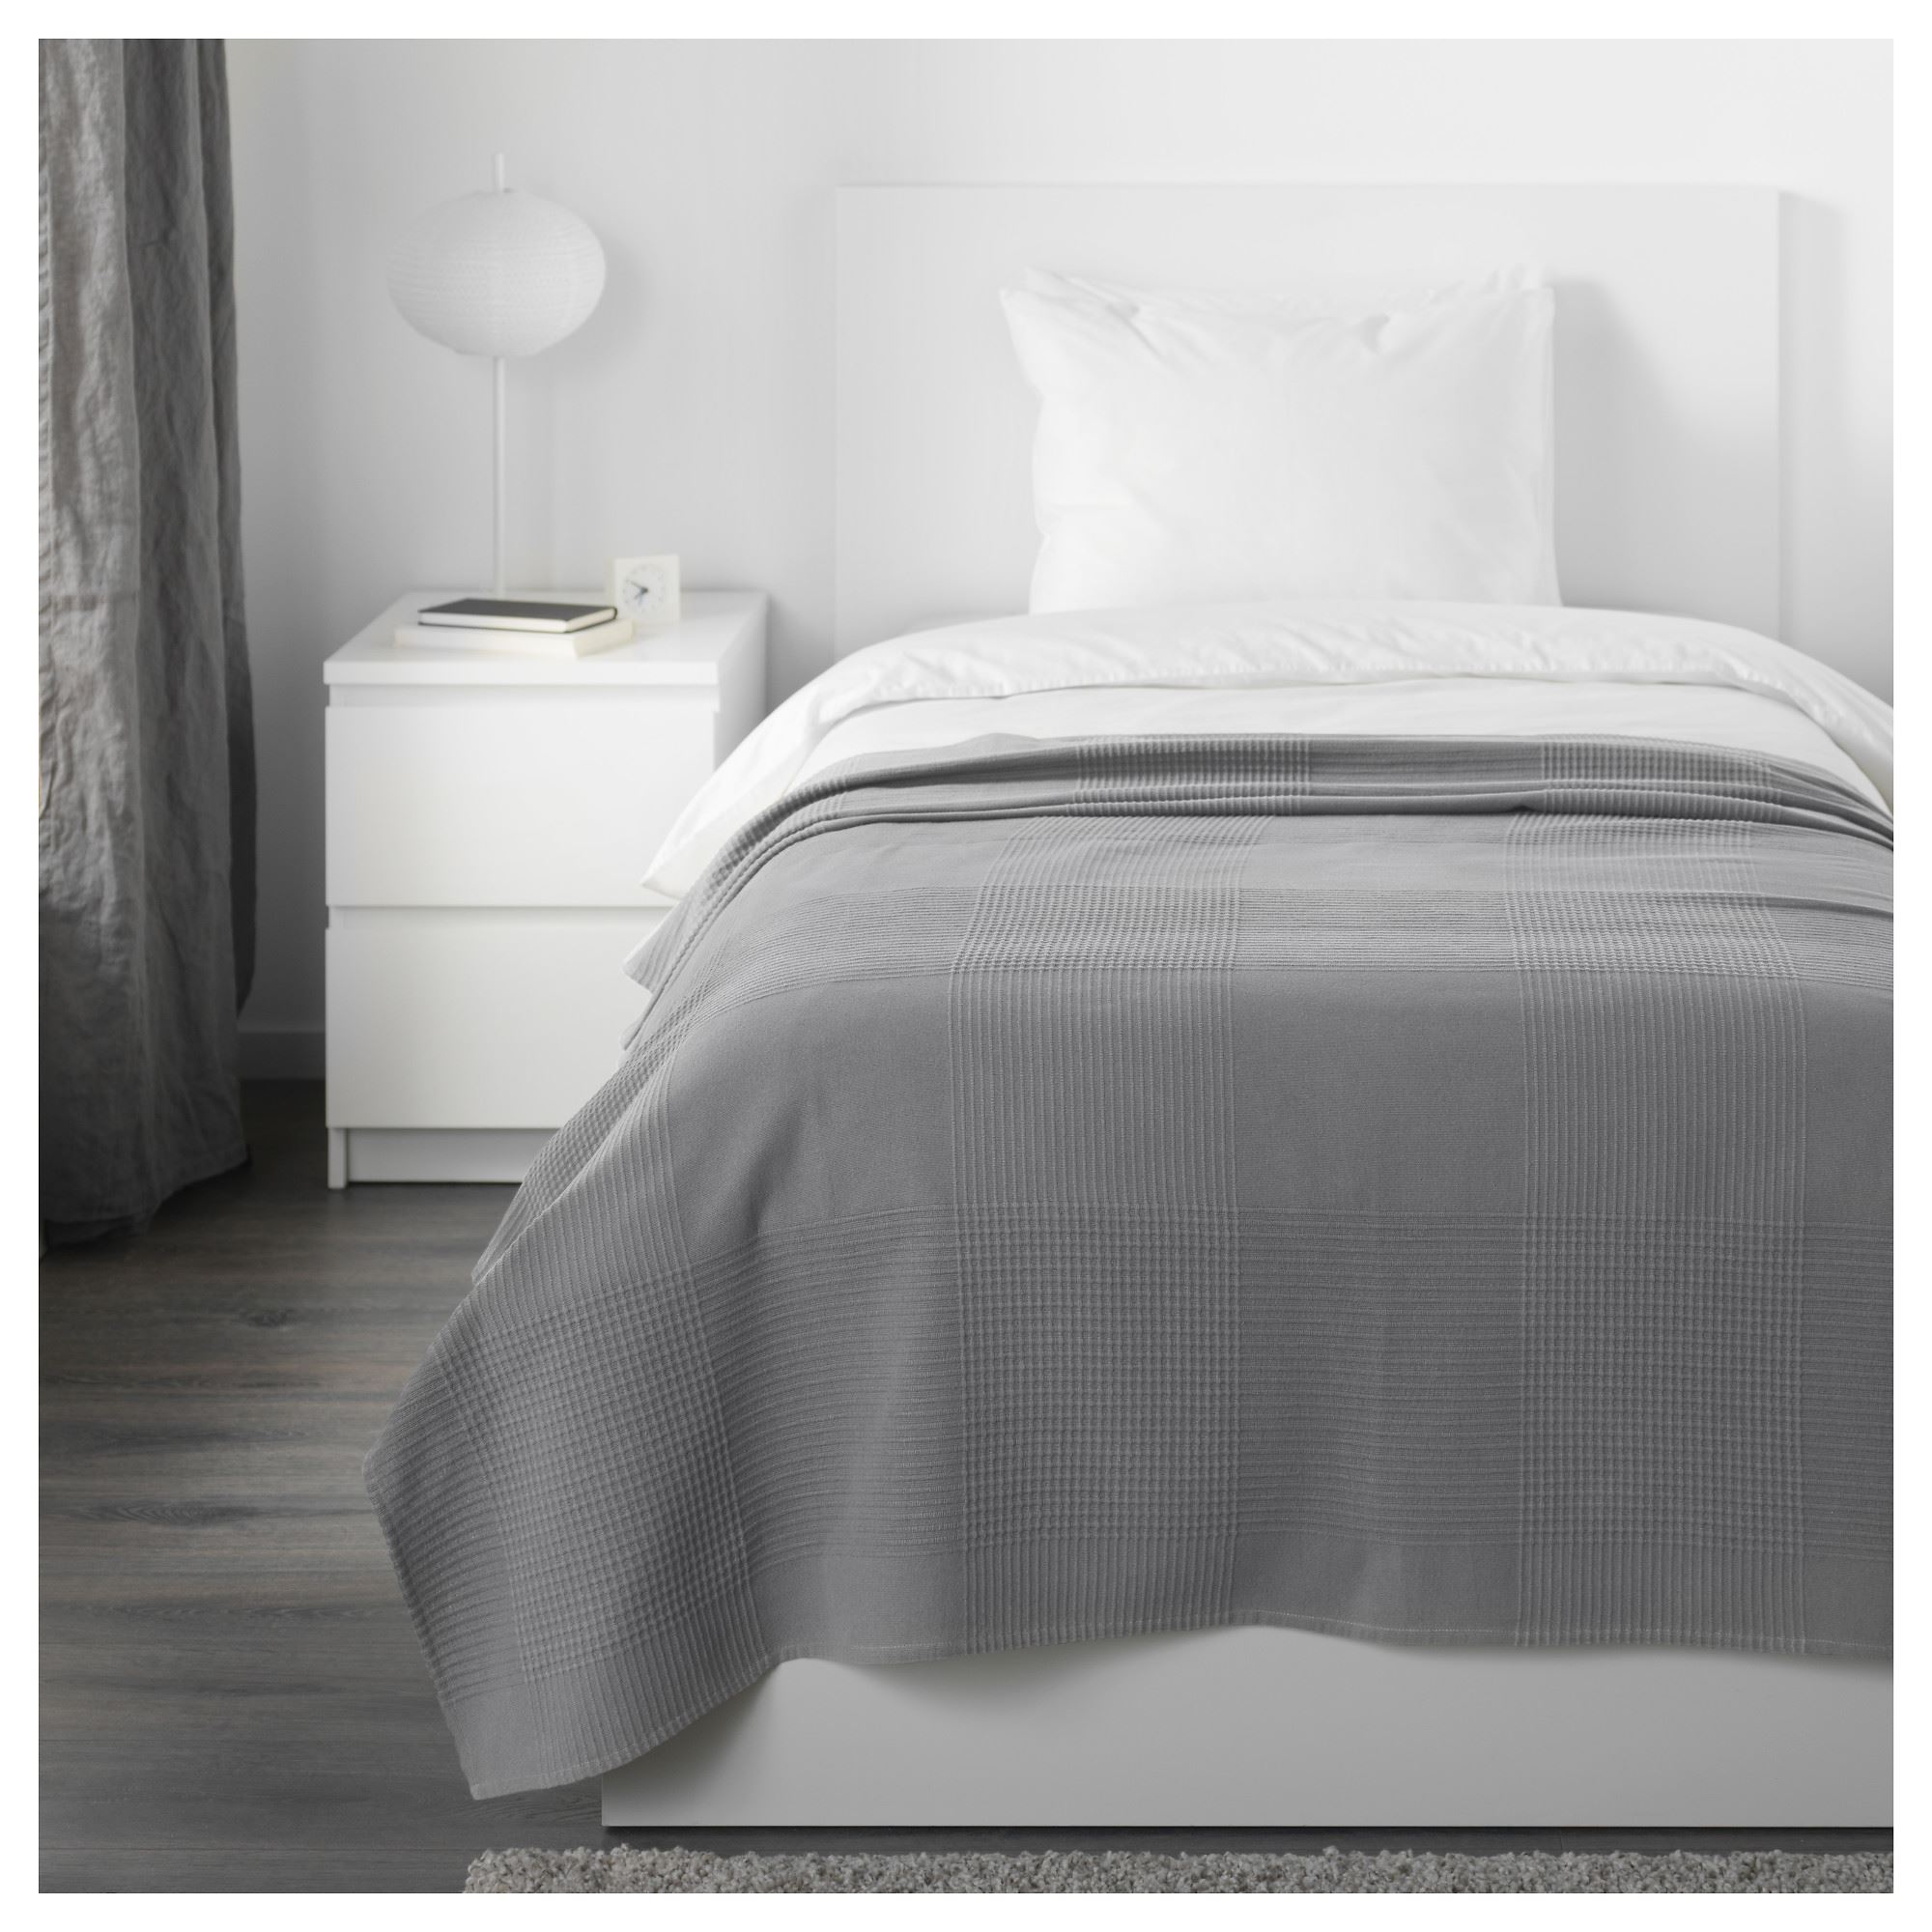 INDIRA tek kişilik yatak örtüsü, gri, 150x250 cm